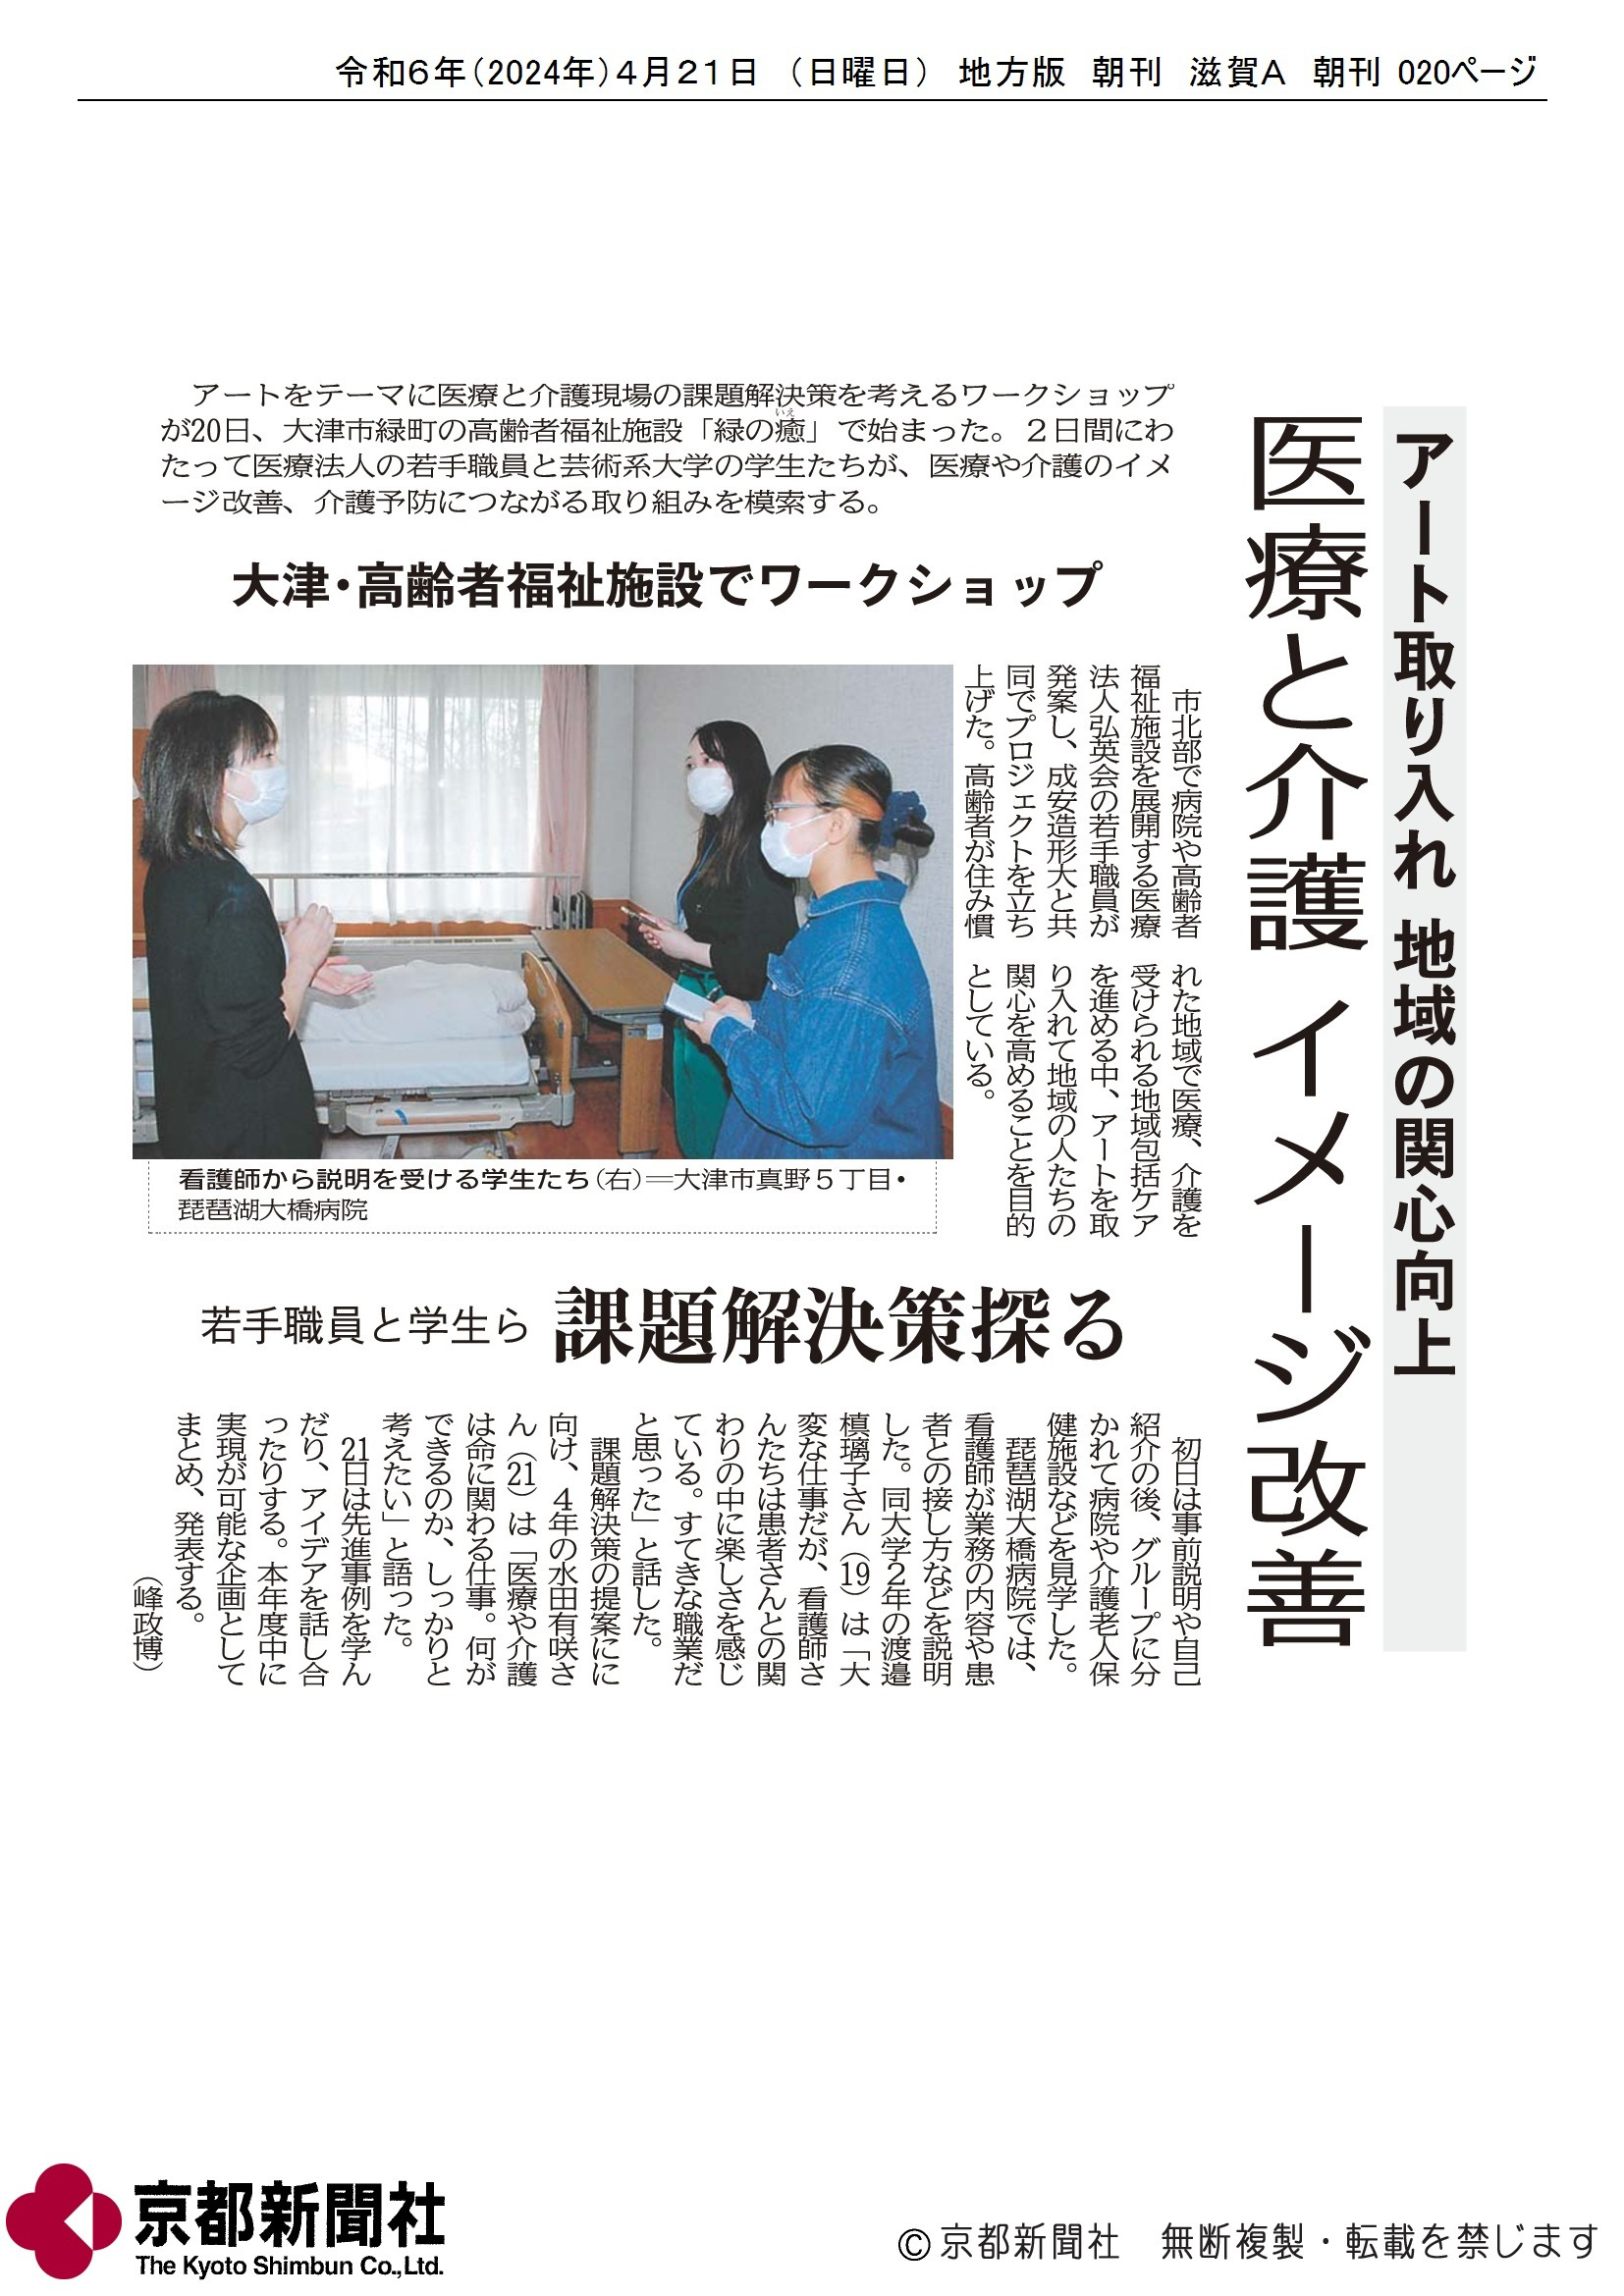 当法人の取り組みが、京都新聞、中日新聞に紹介されました